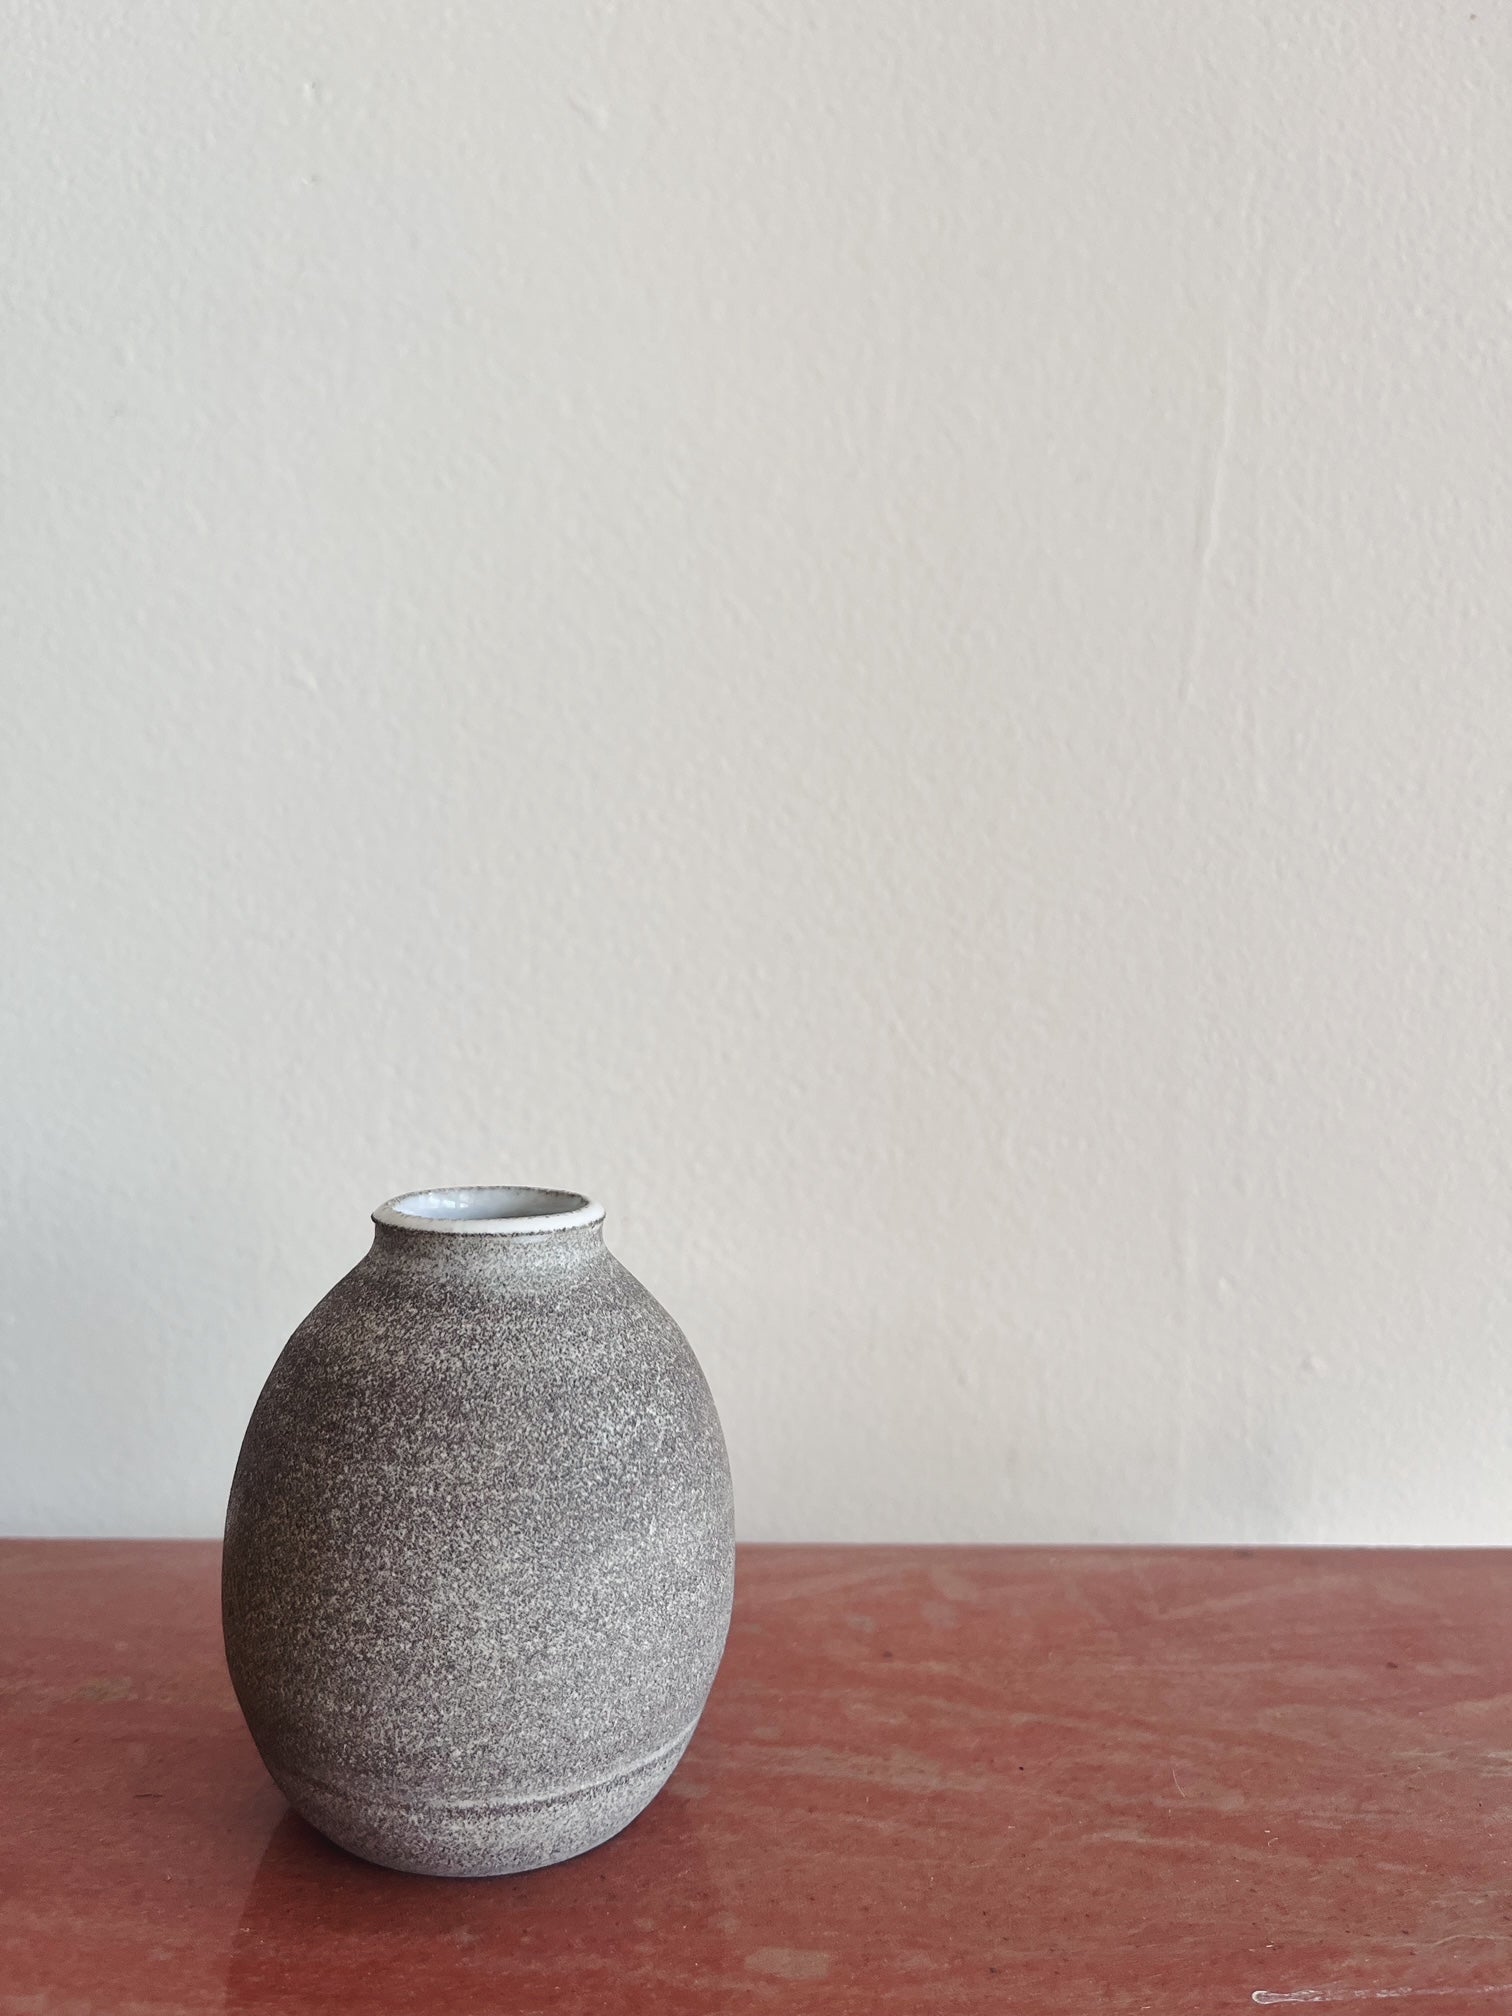 Local Bud Vases by Rachel Hoi